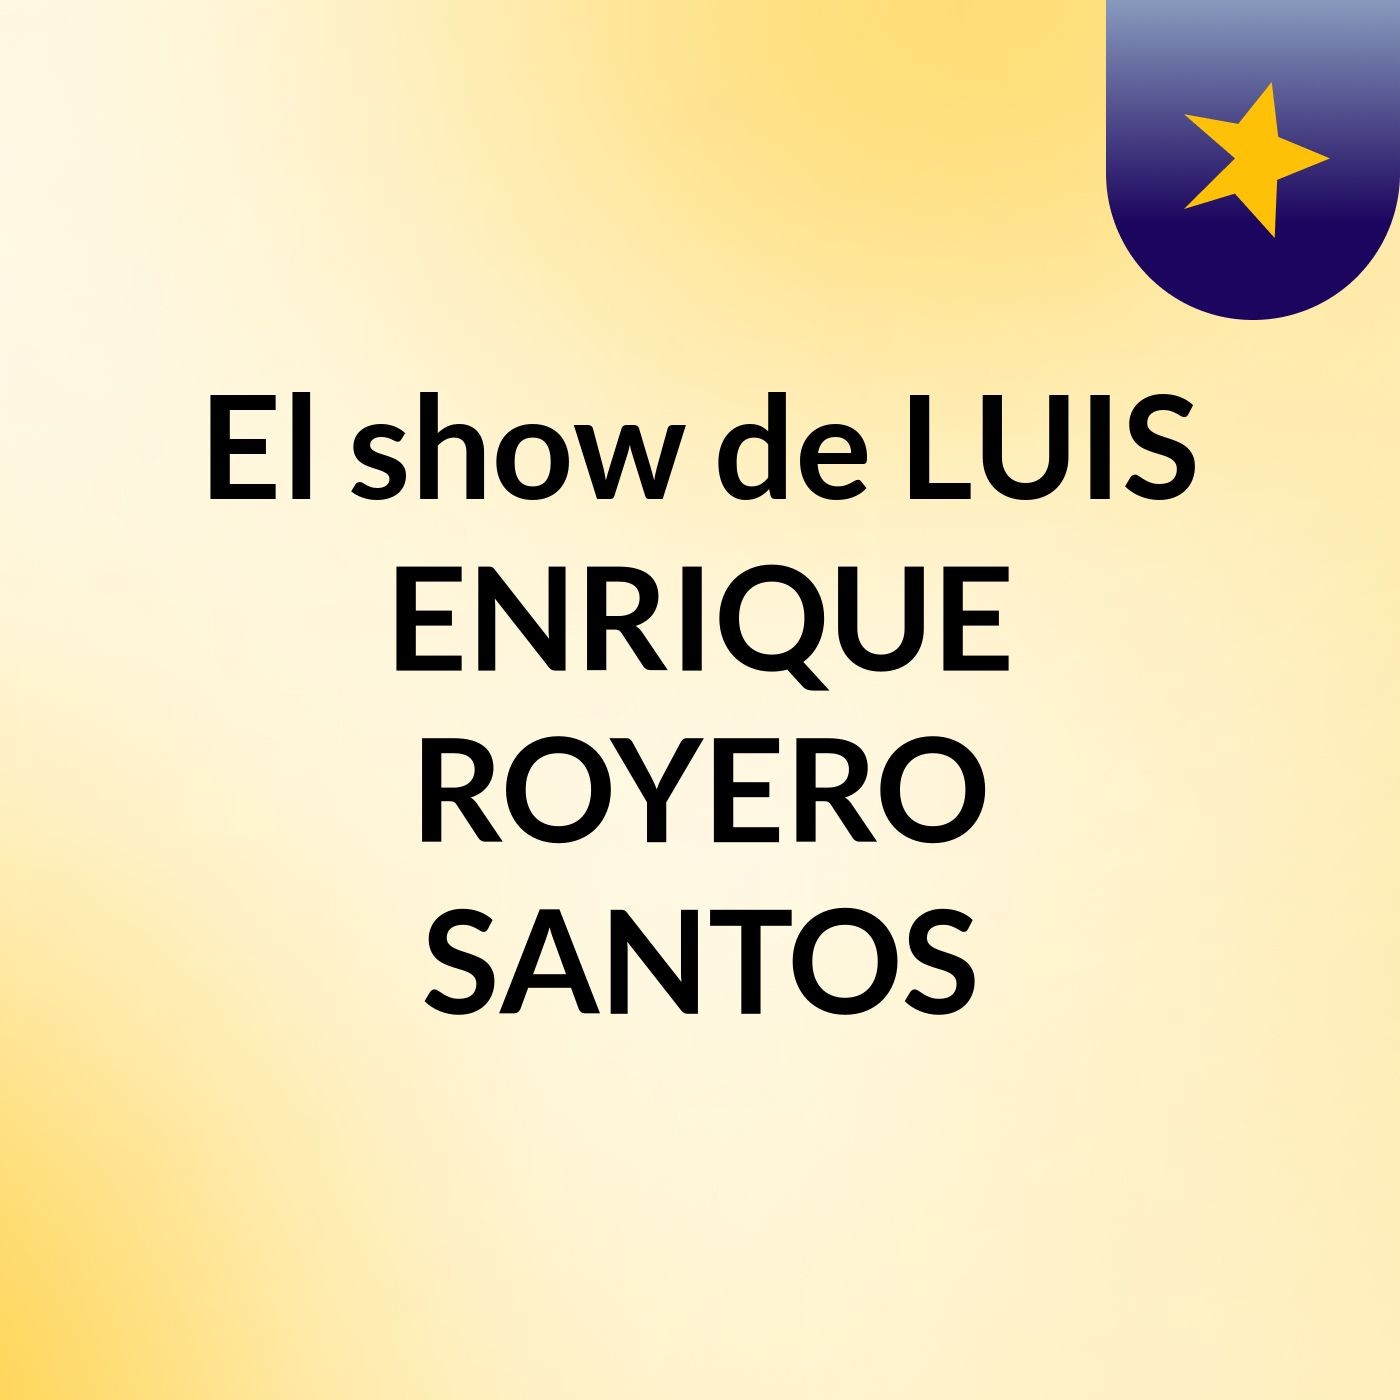 El show de LUIS ENRIQUE ROYERO SANTOS